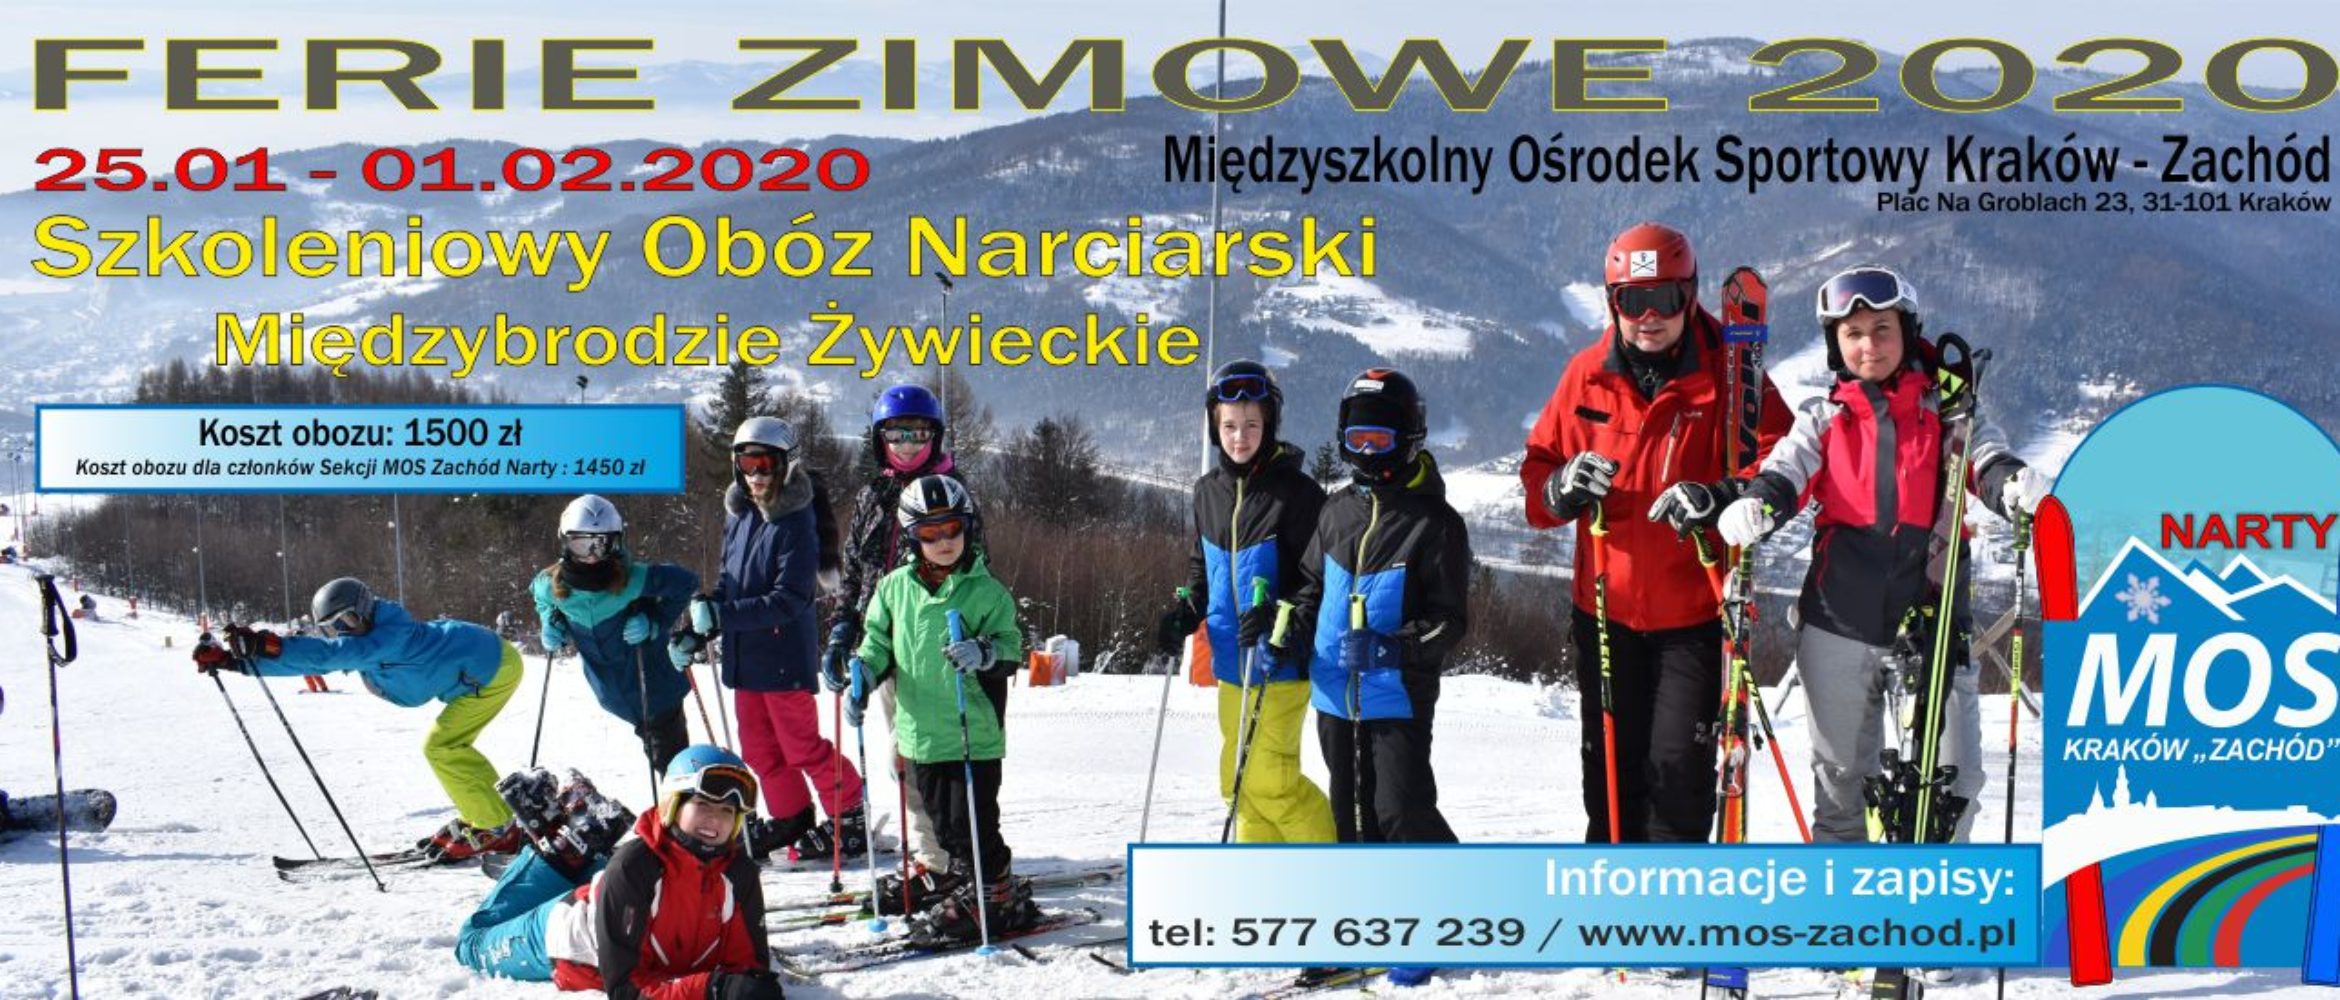 Obóz Narciarski Ferie 2020 – Międzybrodzie Żywieckie 25.01-01.02.2020